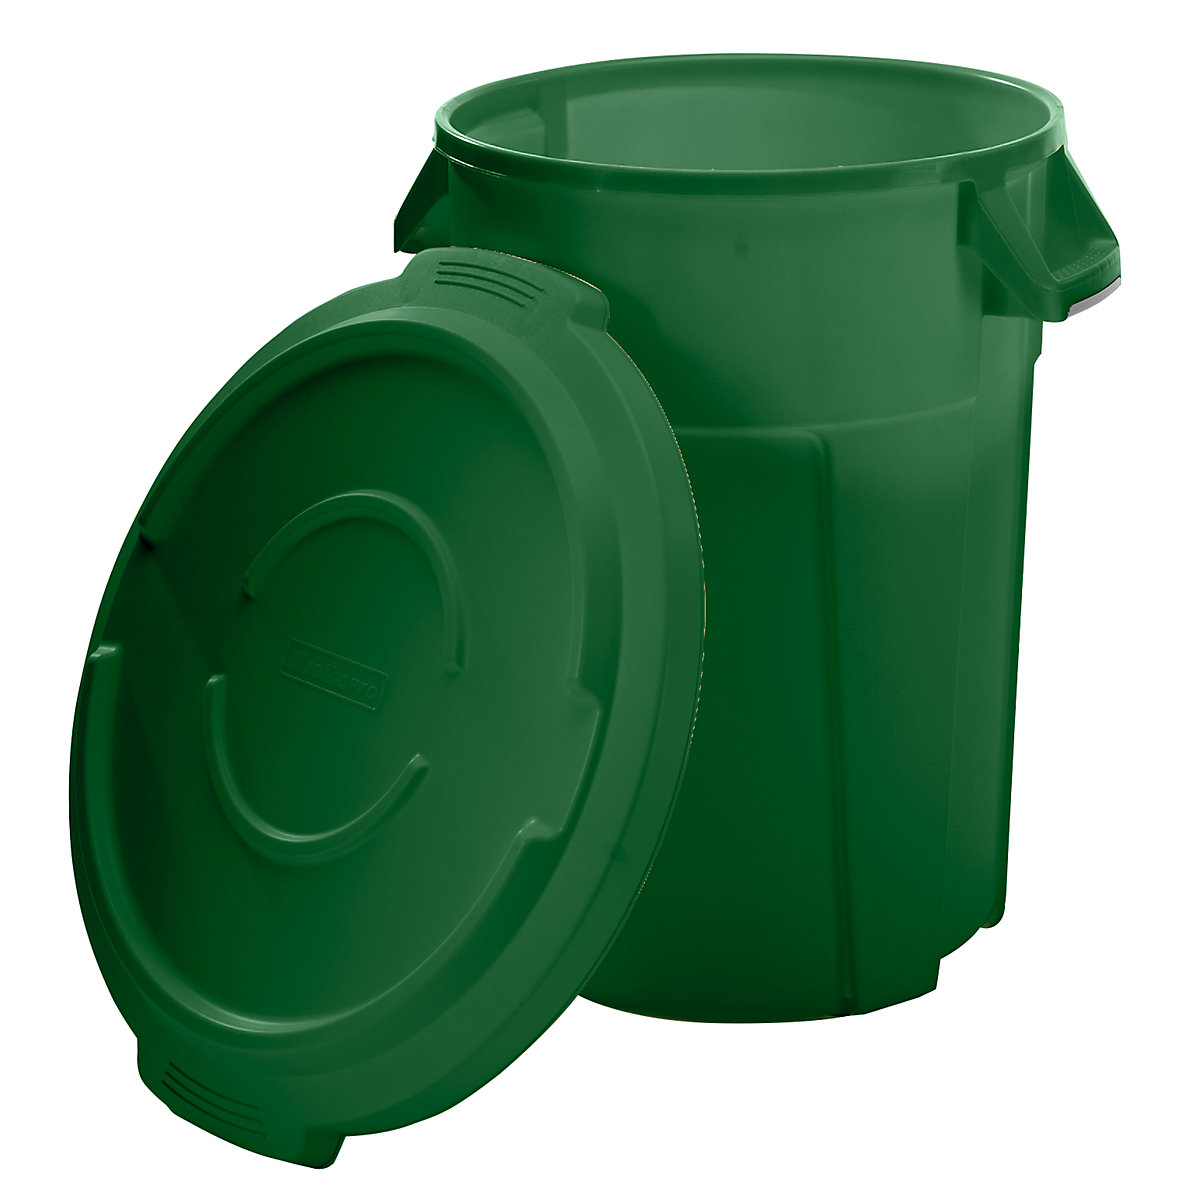 Multifunktionsbehälter mit Deckel rothopro, Volumen 85 l, lebensmittelecht, grün-5